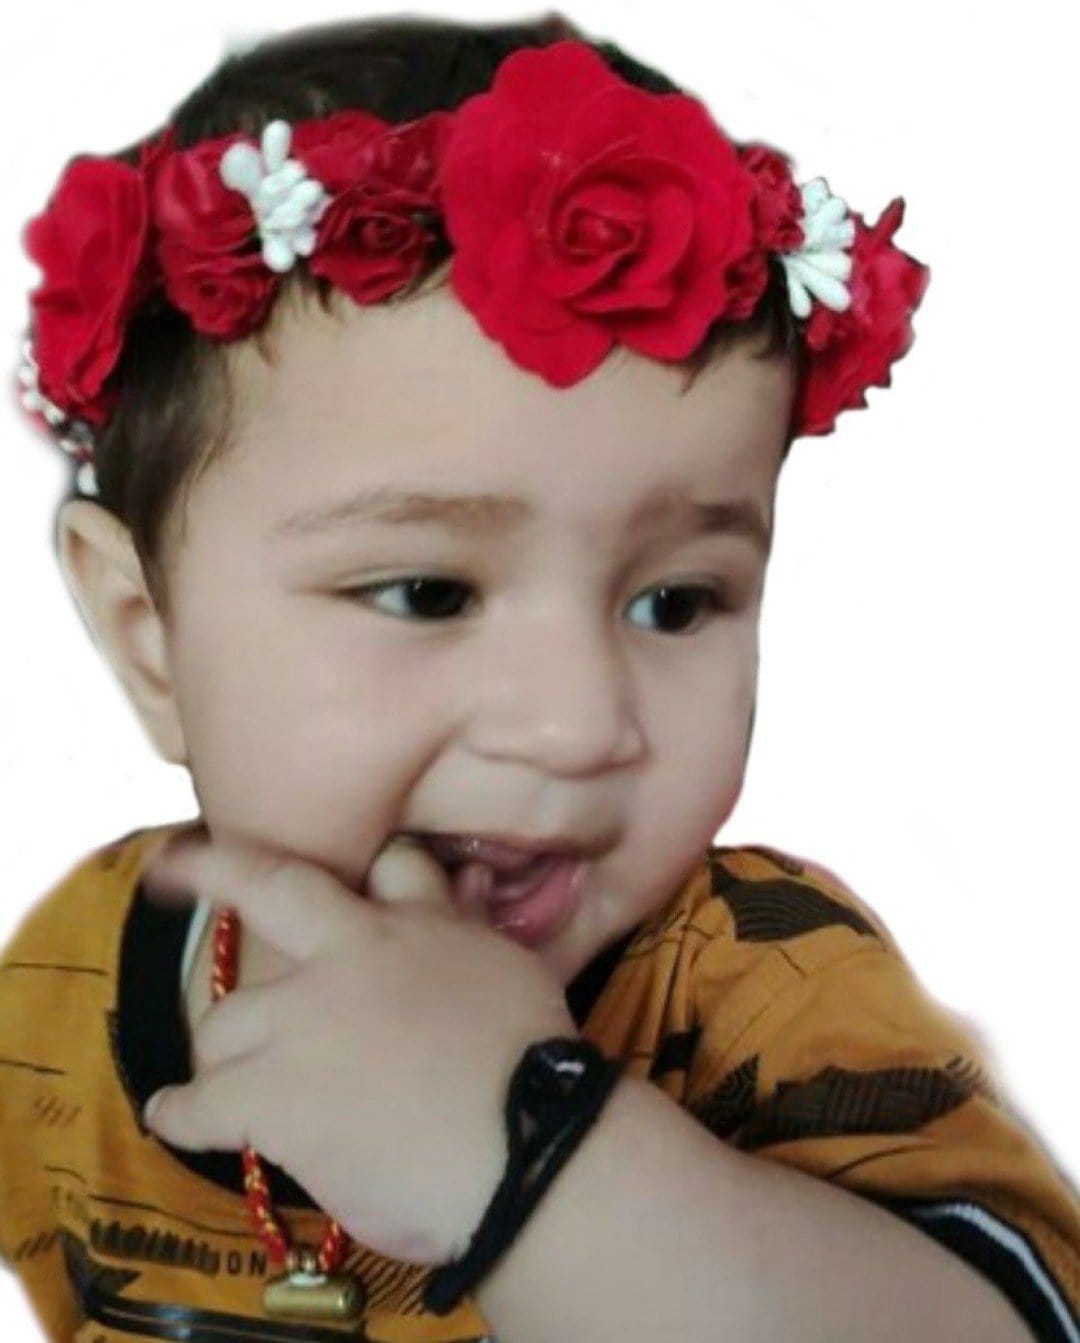 New Jaipur Handicraft Flower Tiara 😇 Red-White / Engagement / Birthday LAMANSH® Princess Bridal Floral Tiara  / Tiara For Baby, Women & Girls 🌺 / Birthday Tiara